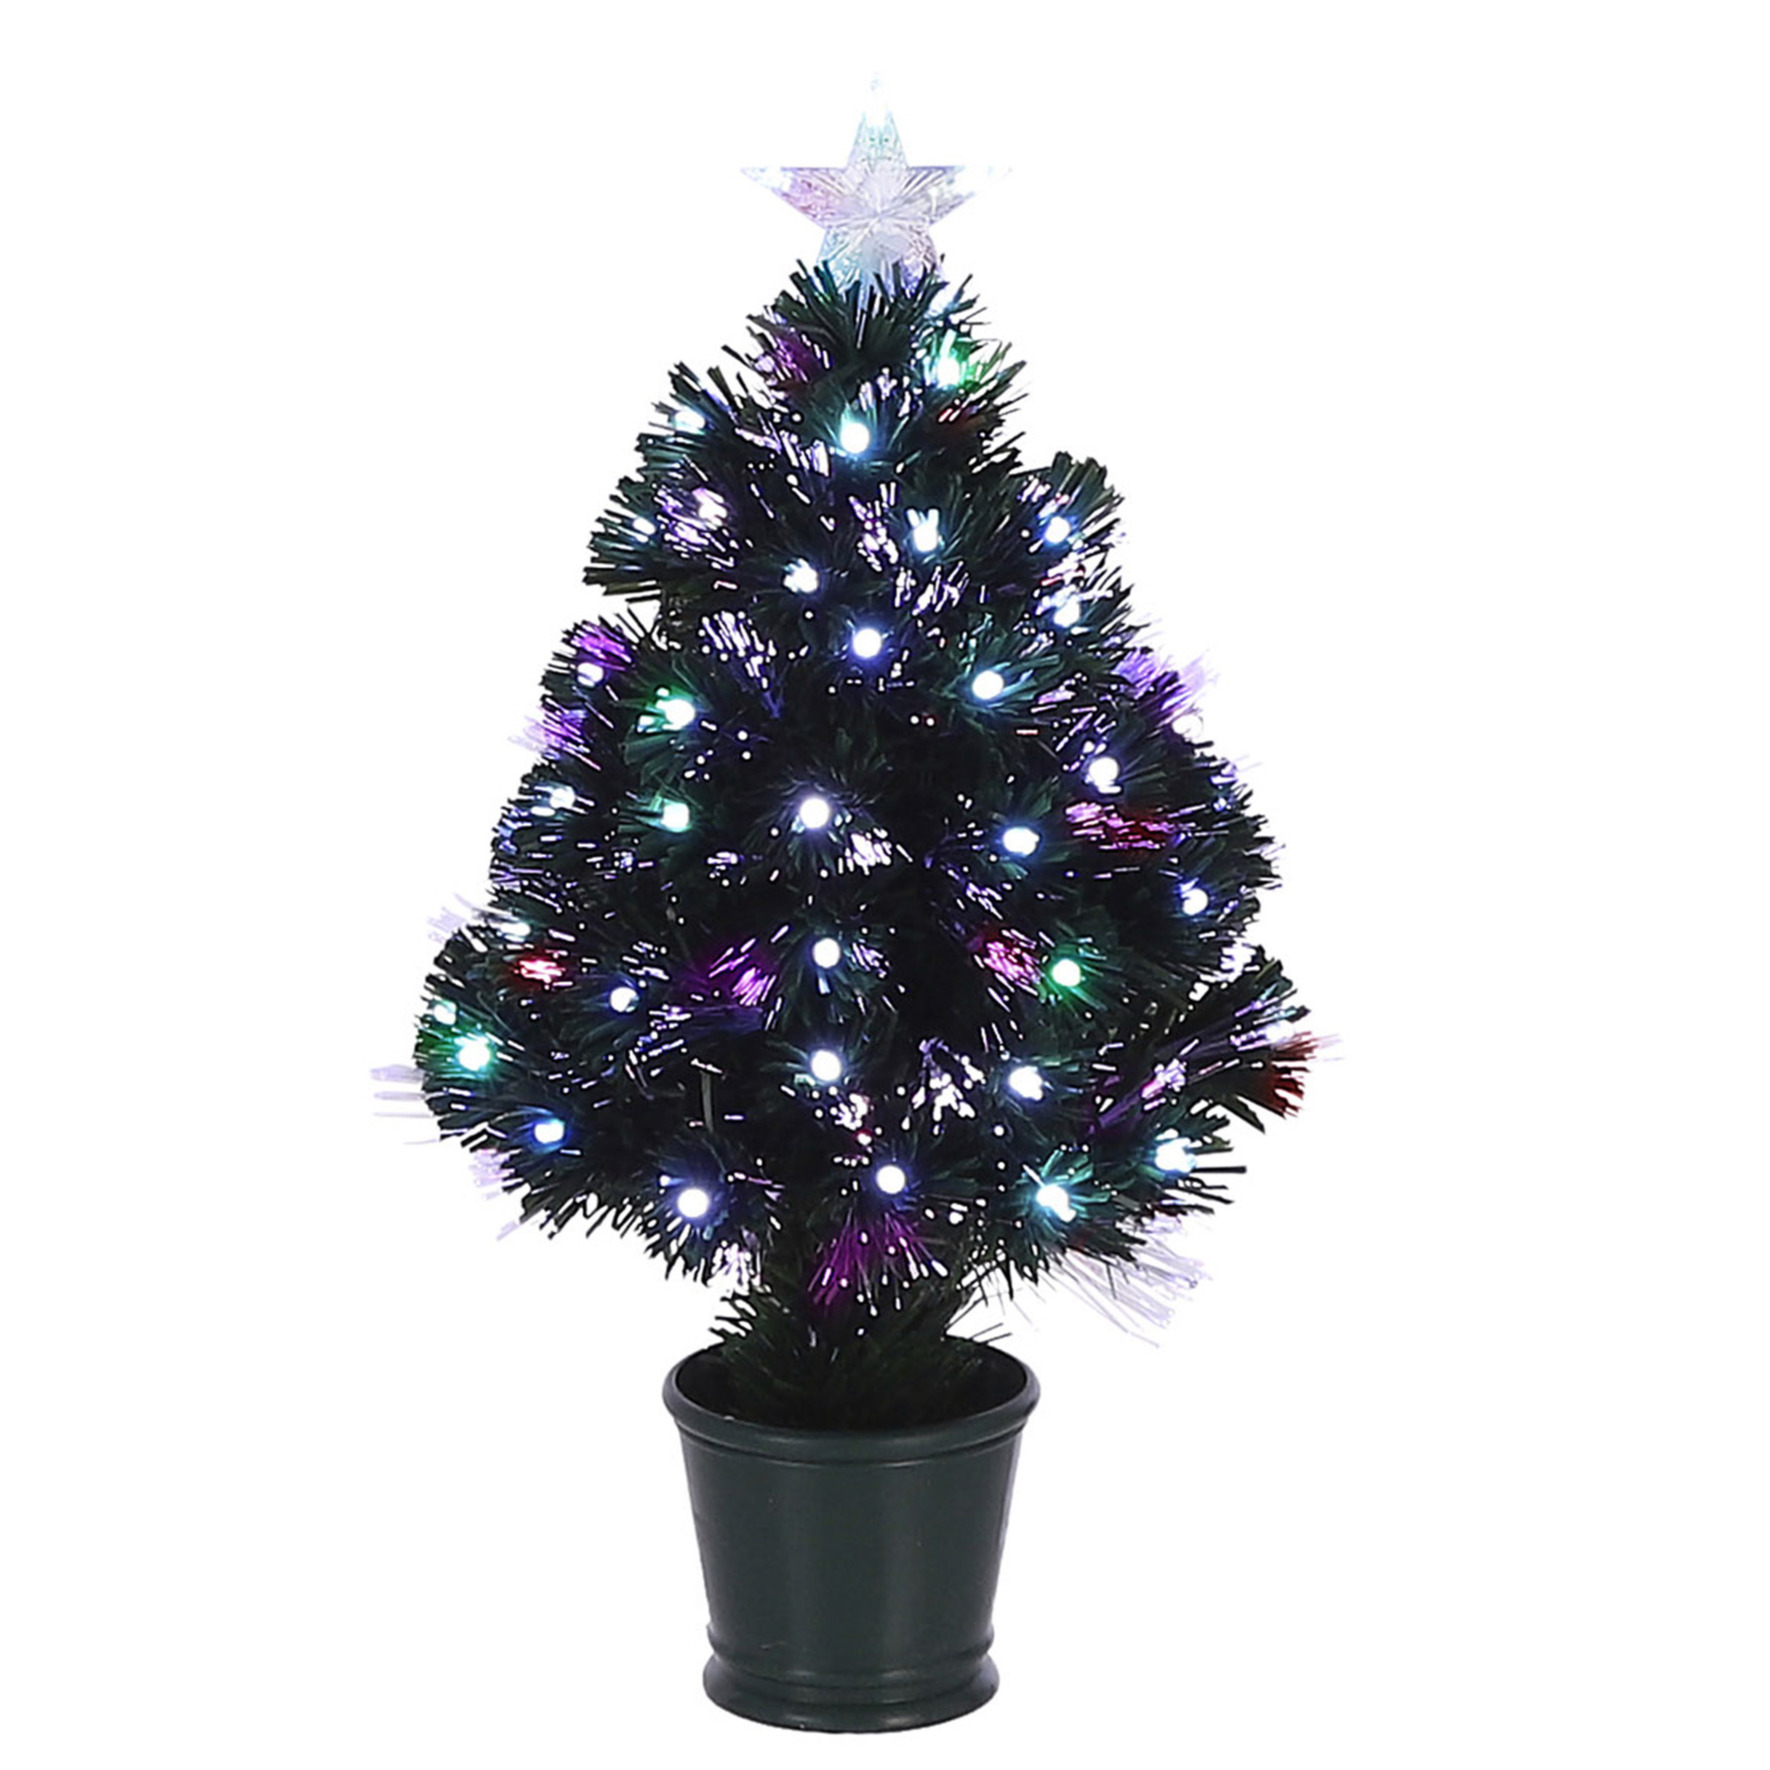 Fiber optic kerstboom/kunst kerstboom met verlichting en piek ster cm kerst bestellen, Kerst decoratie winkel optic kerstboom/kunst